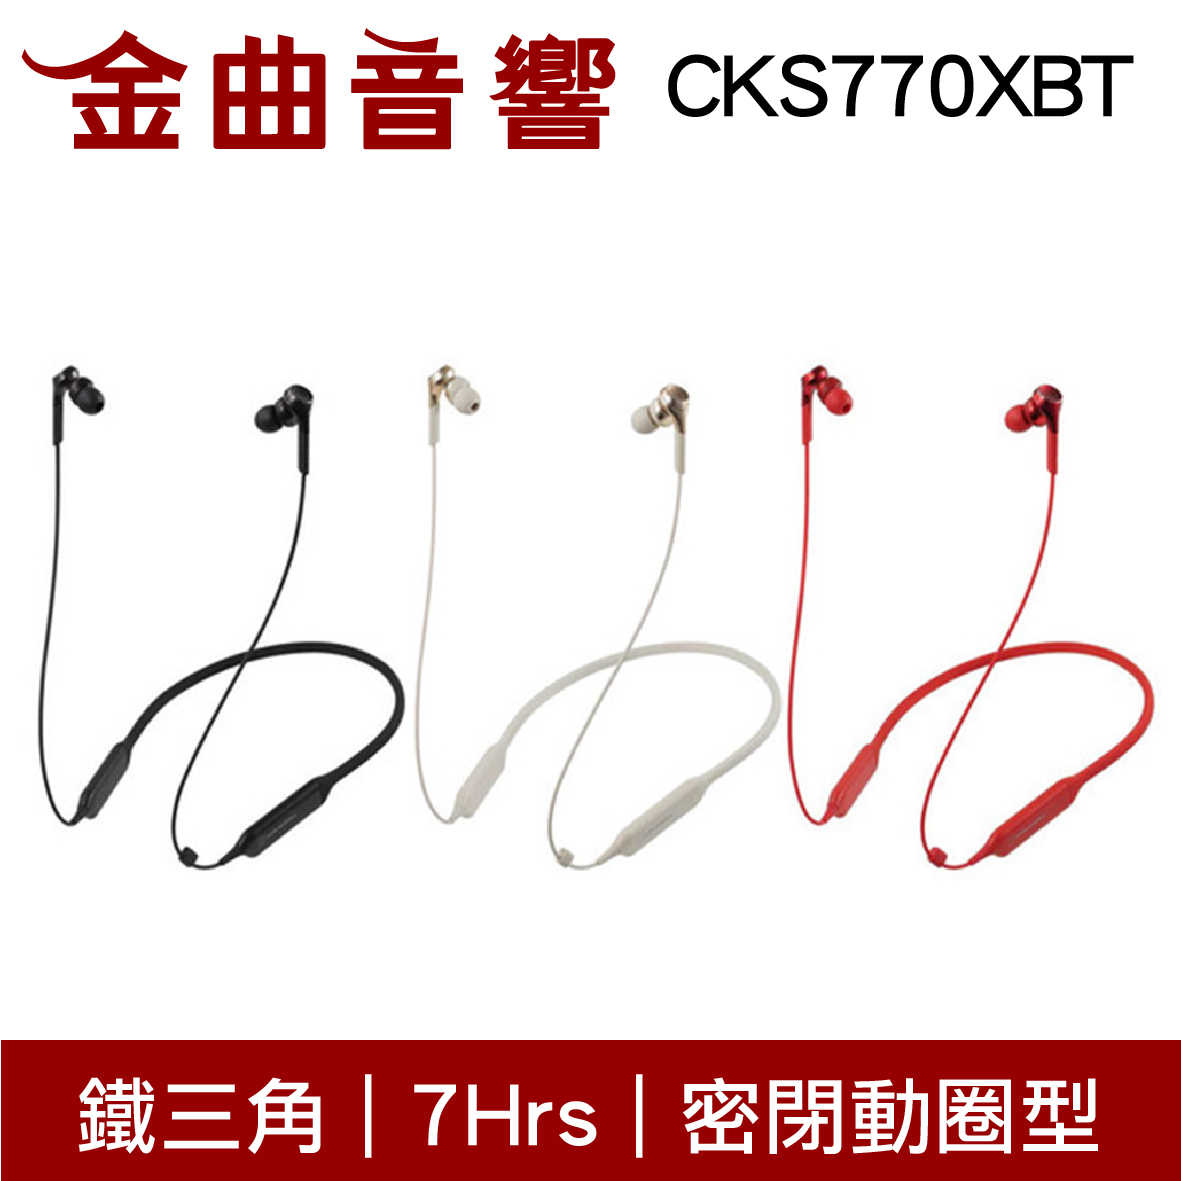 鐵三角 ATH-CKS770XBT 藍牙 耳機 無線 重低音 CKS770XBT | 金曲音響